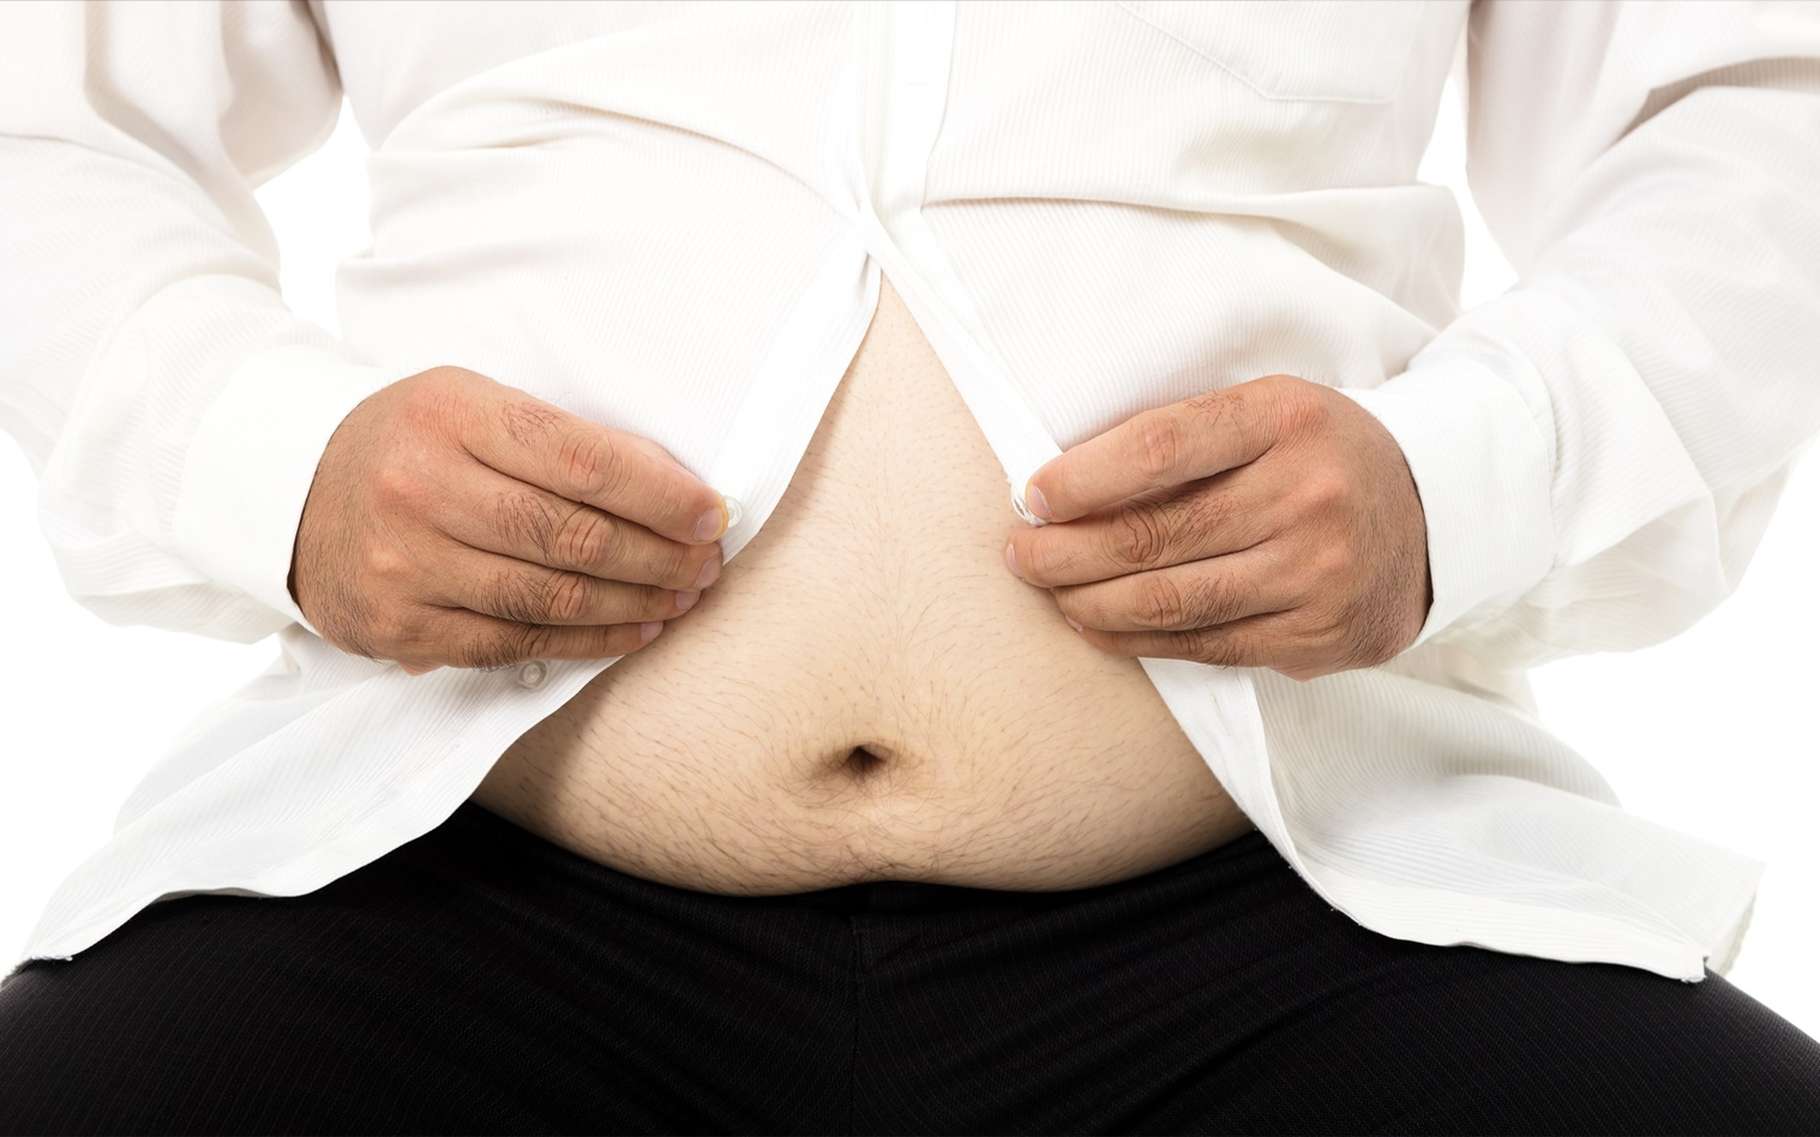 La répartition des graisses joue un rôle important dans la survenue de maladie métaboliques. © Colros, Flickr, CC by-sa 2.0